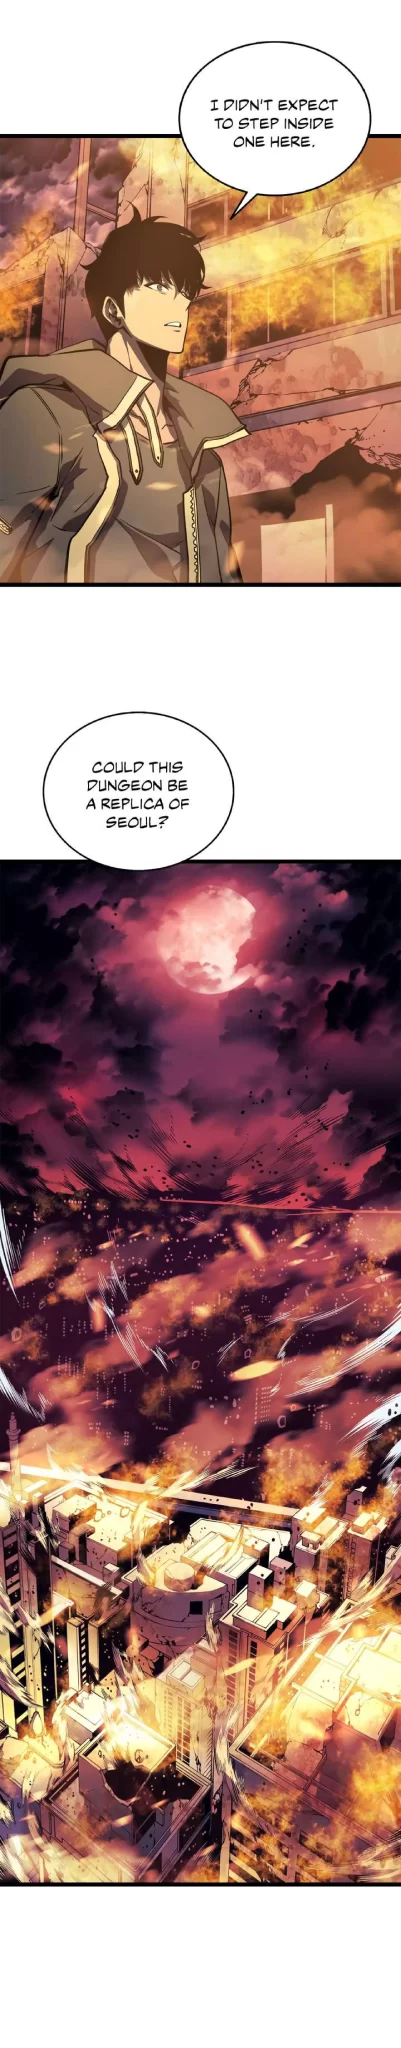 Solo Leveling Manga Manga Chapter - 57 - image 8